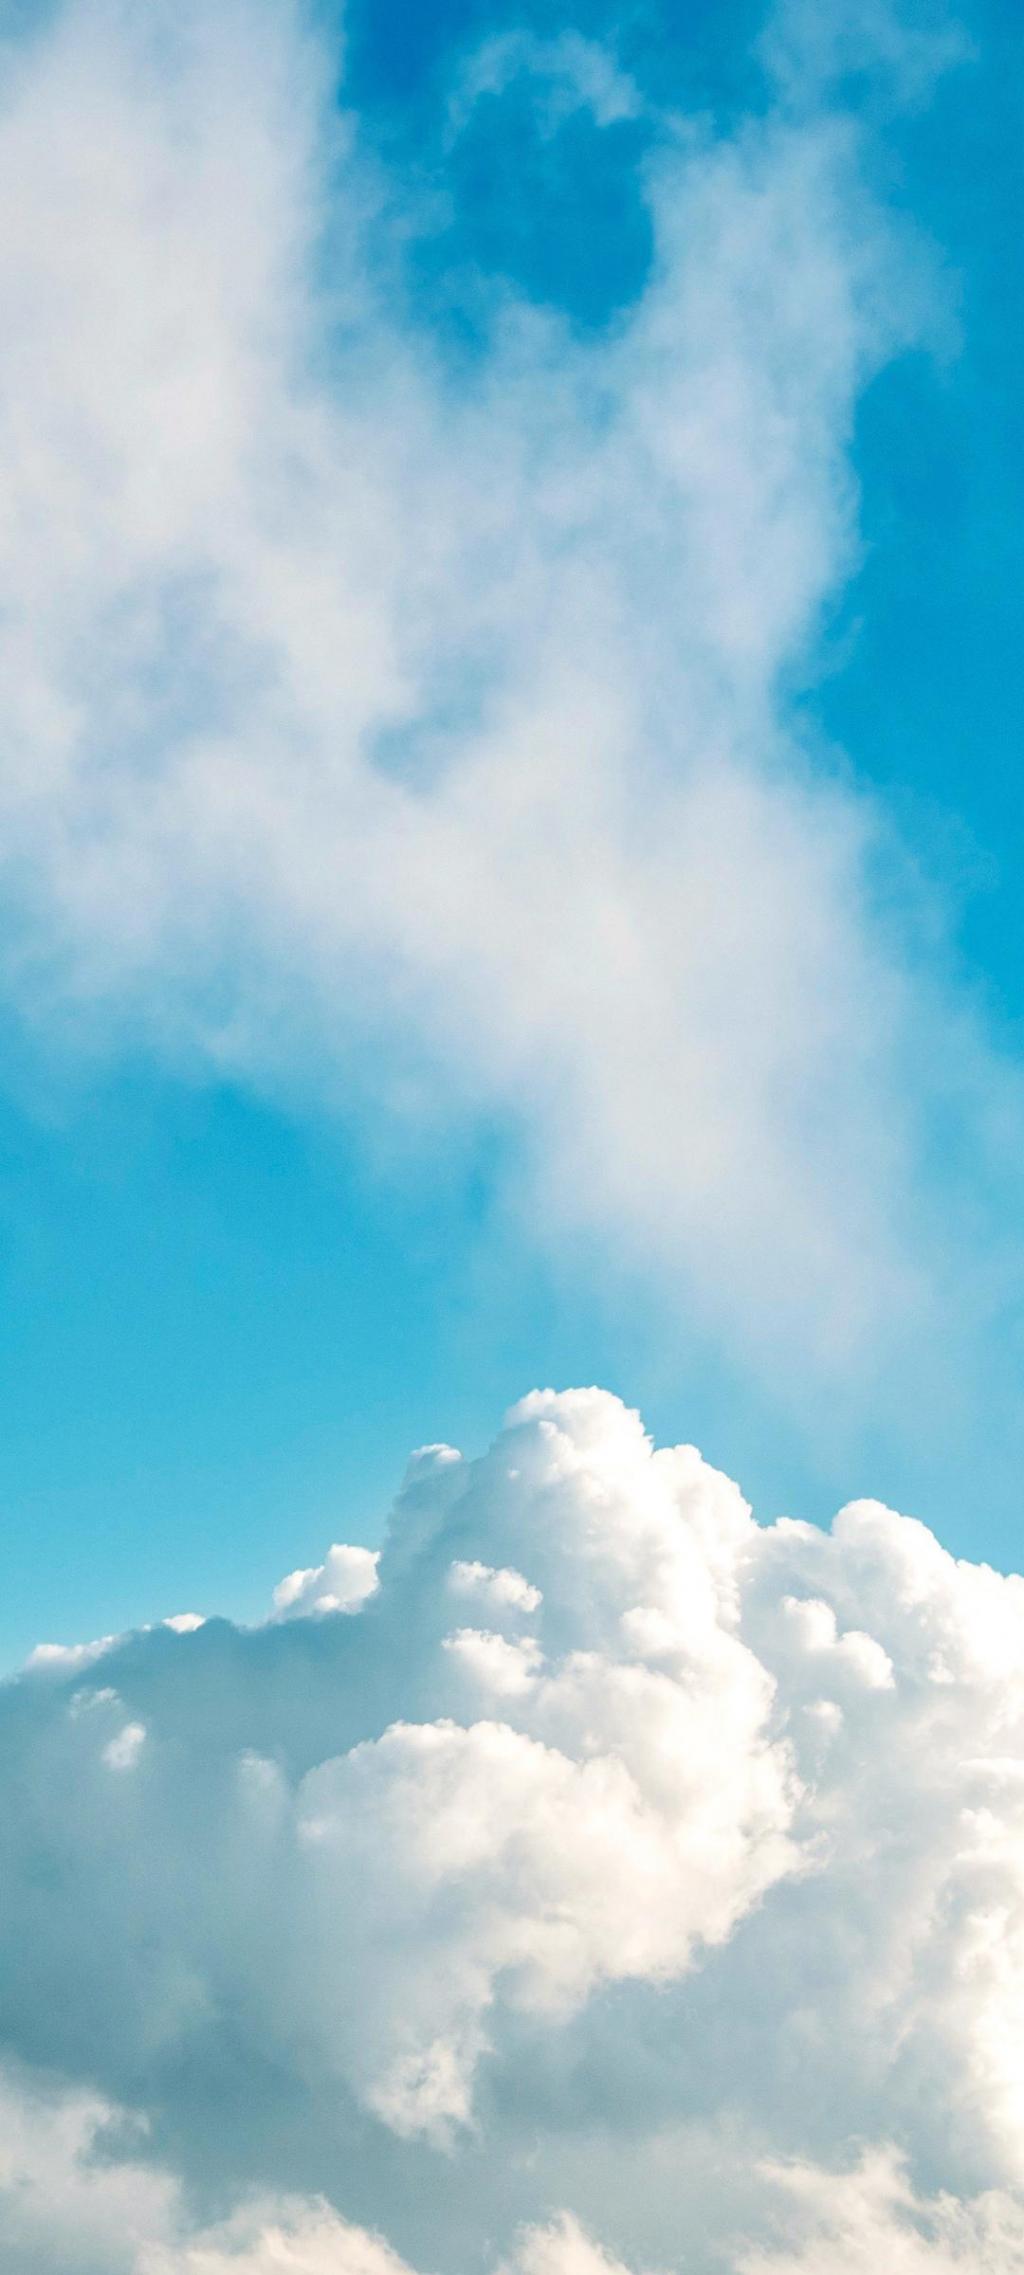 湛蓝的天空洁白的云朵风光系列手机壁纸